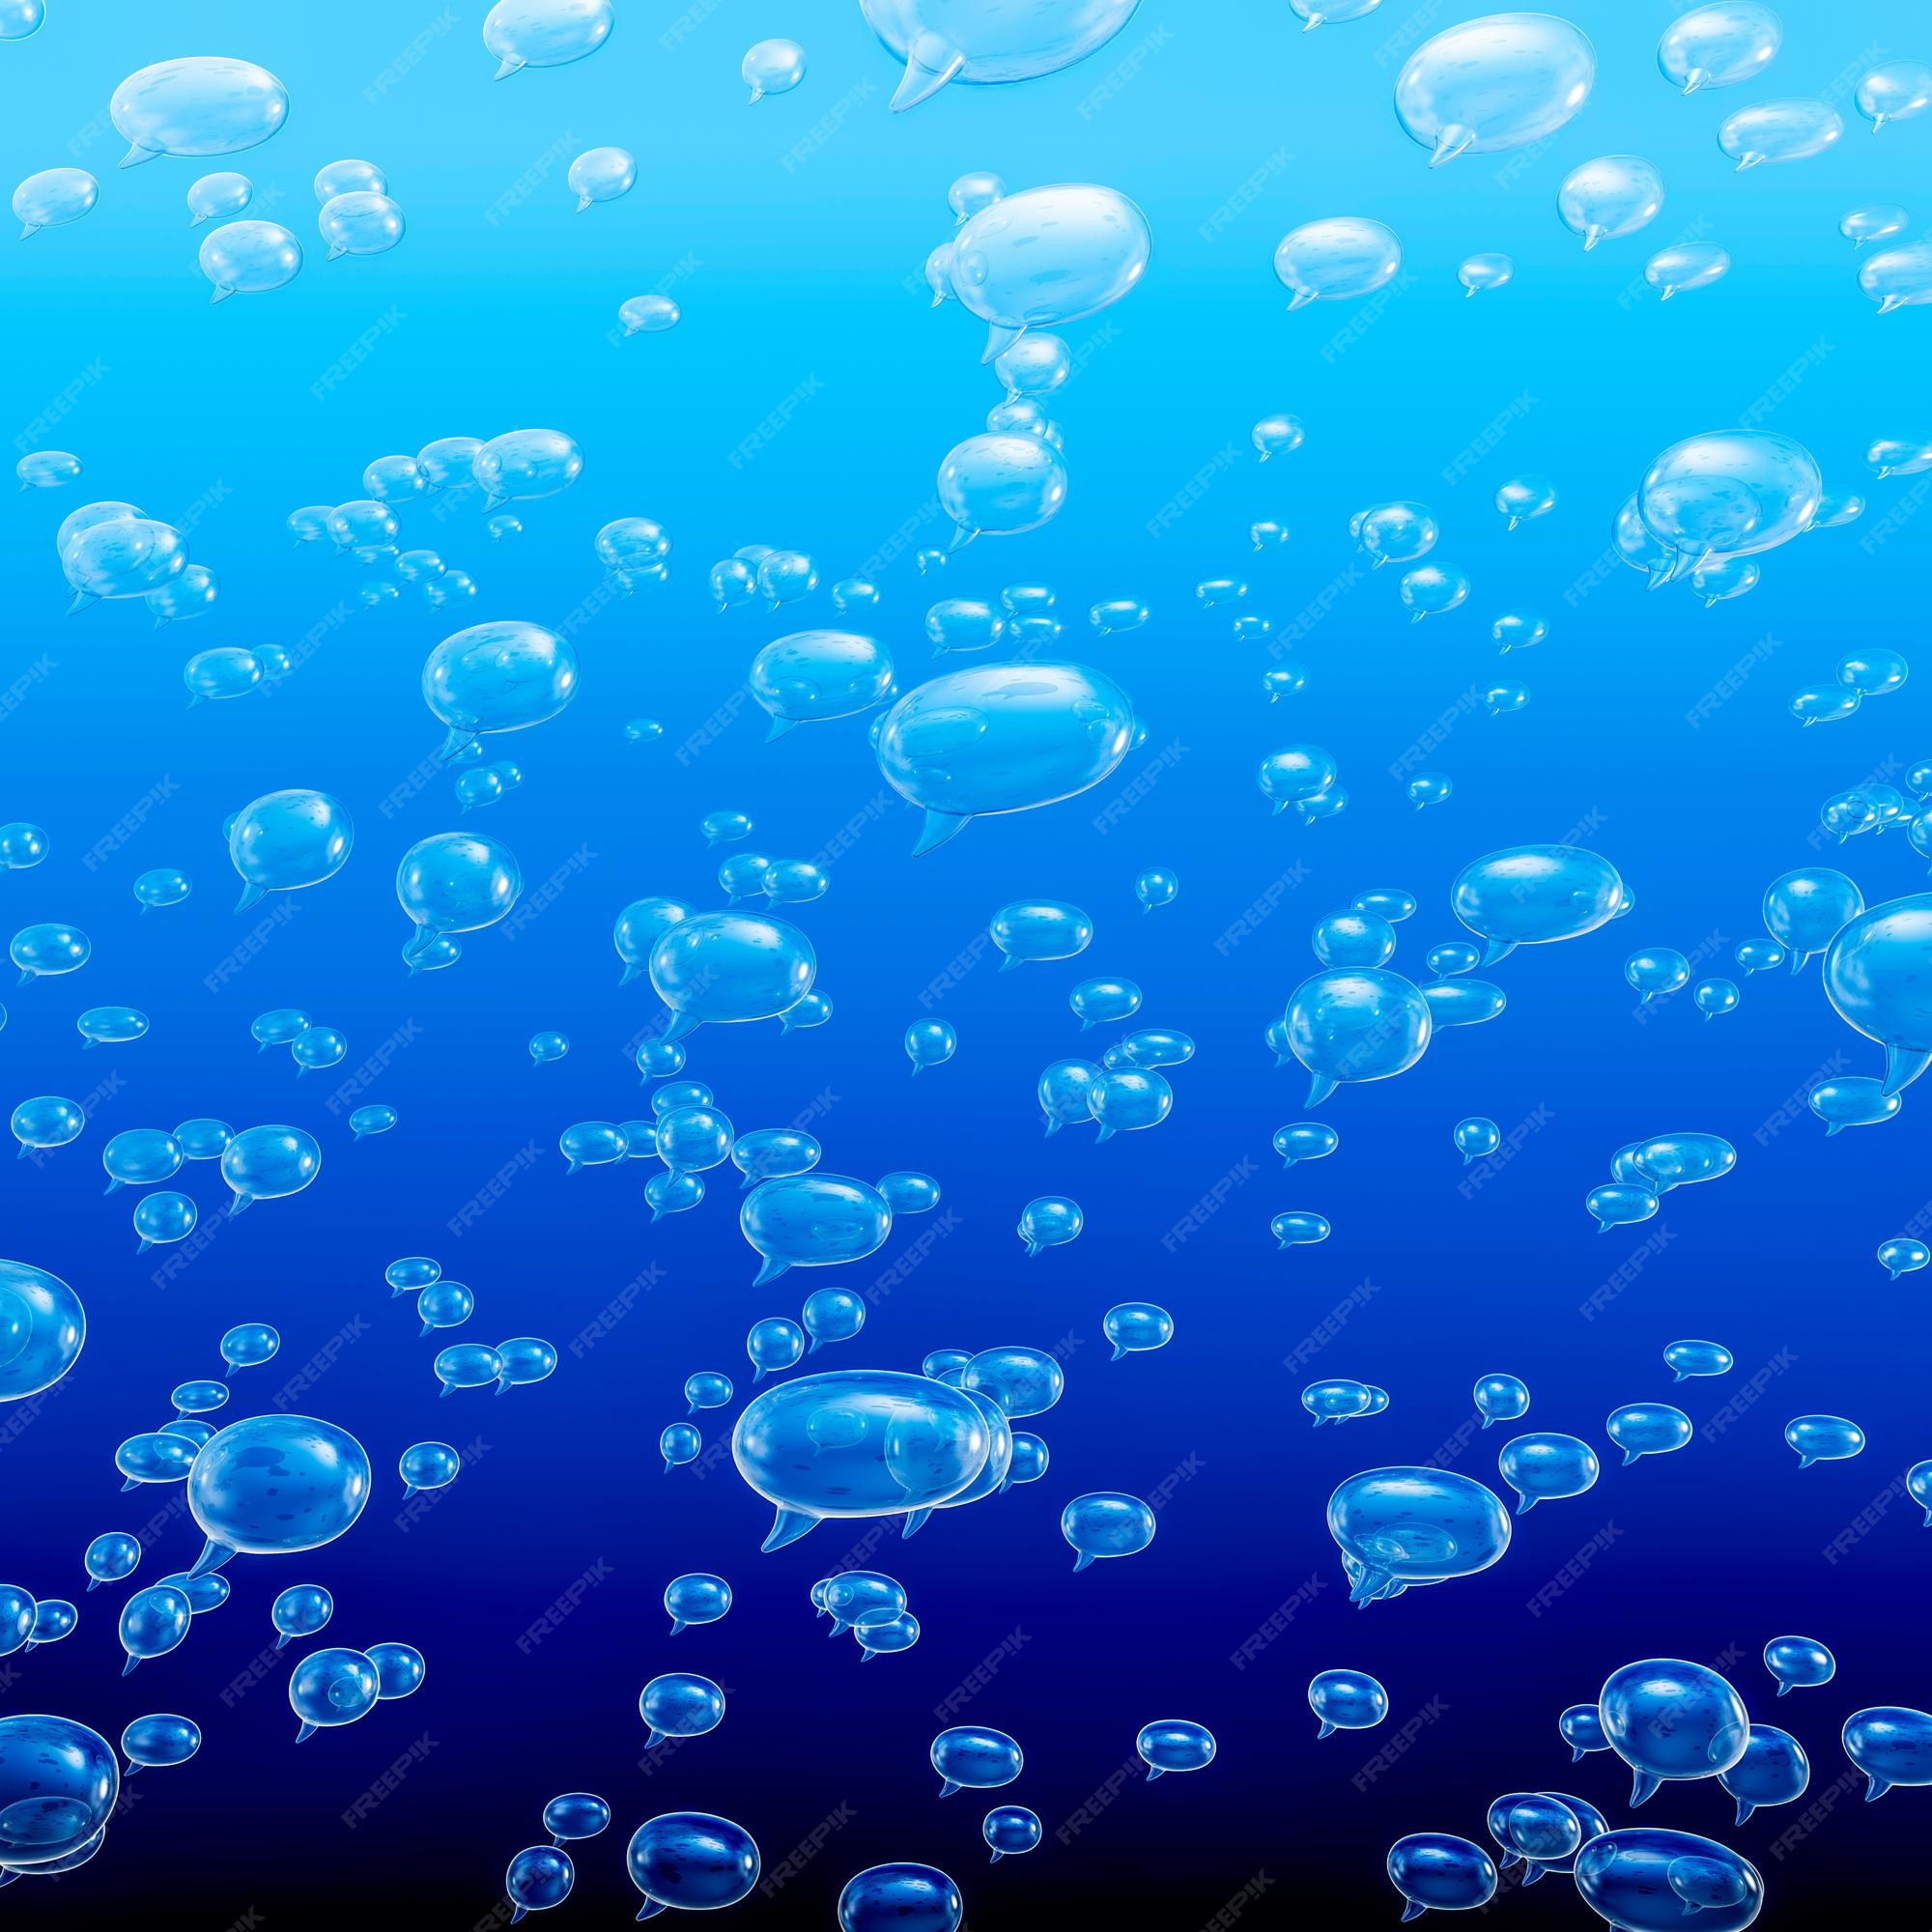 speech bubble underwater